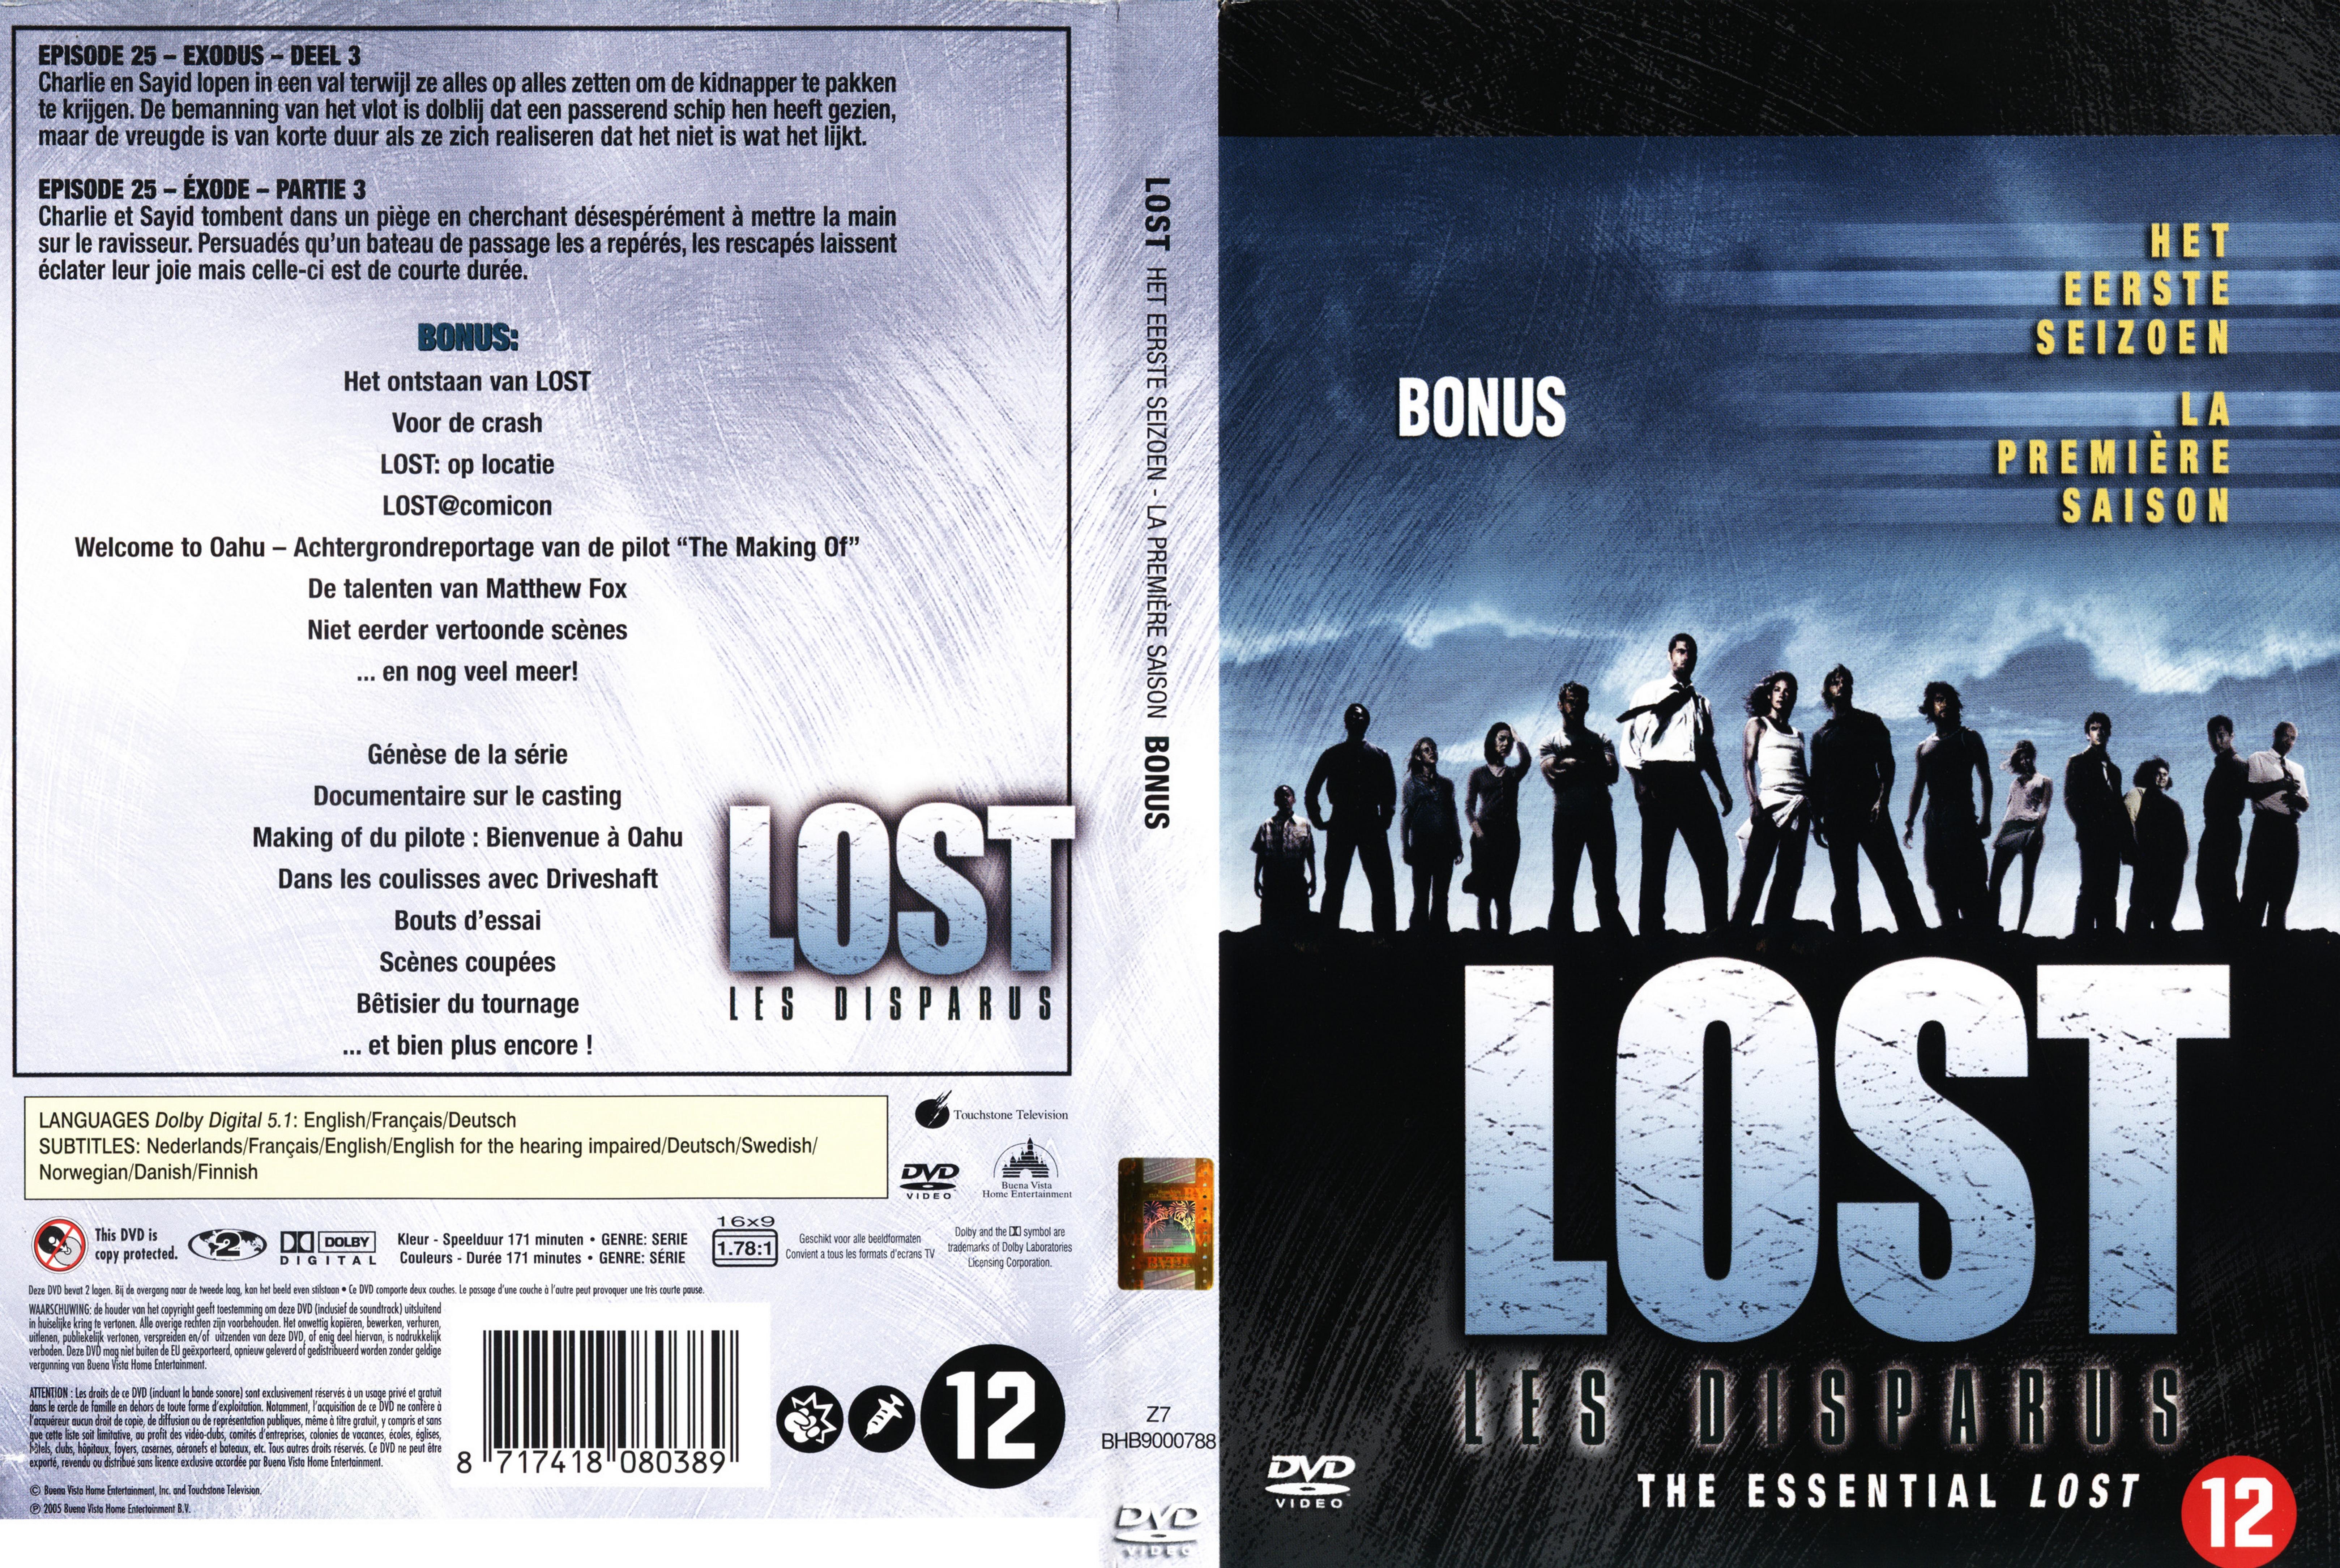 Jaquette DVD Lost Saison 1 DVD 7 v2